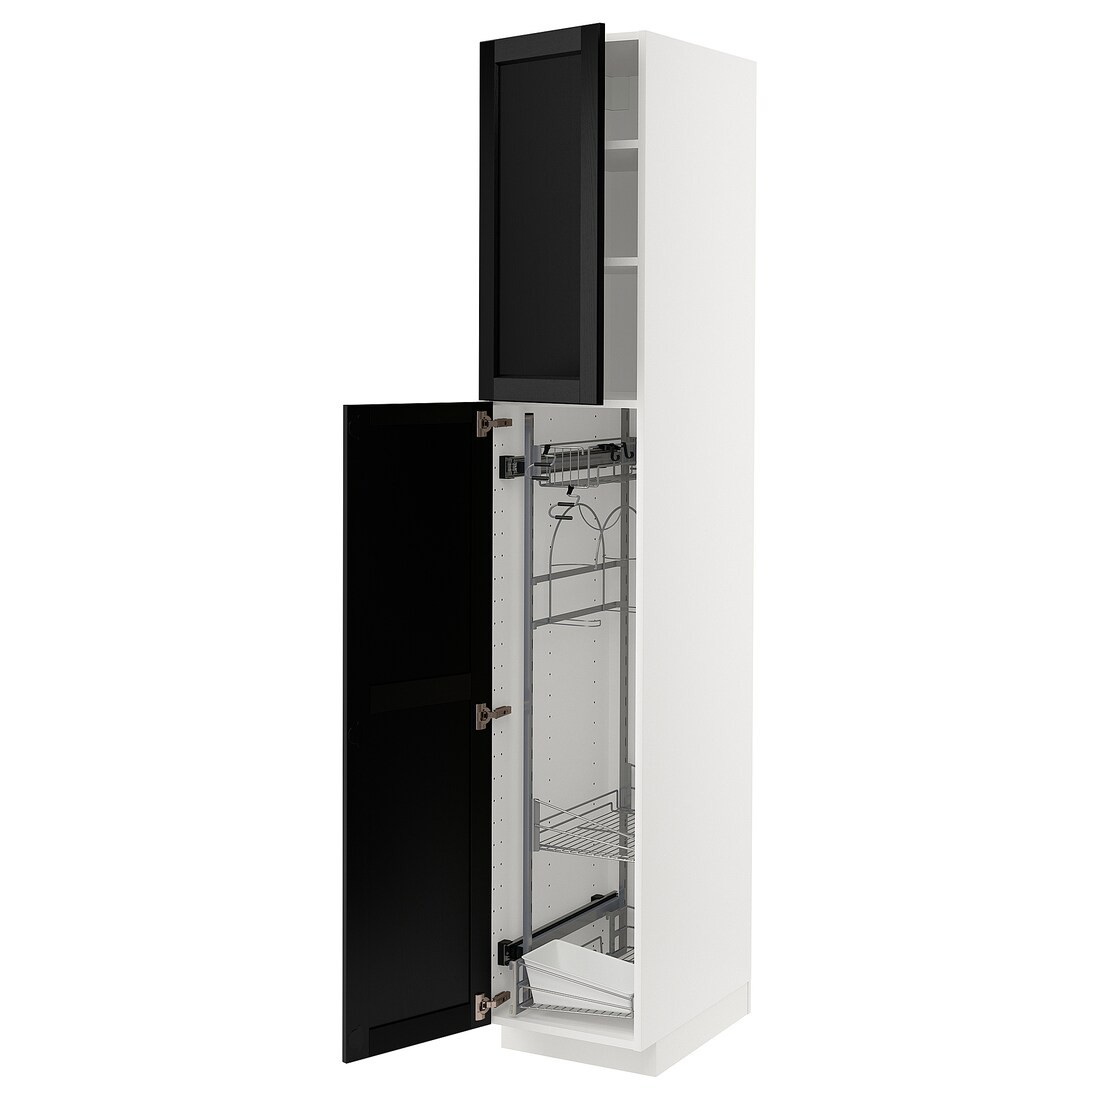 METOD МЕТОД Высокий шкаф с отделением для аксессуаров для уборки, белый / Lerhyttan черная морилка, 40x60x220 см